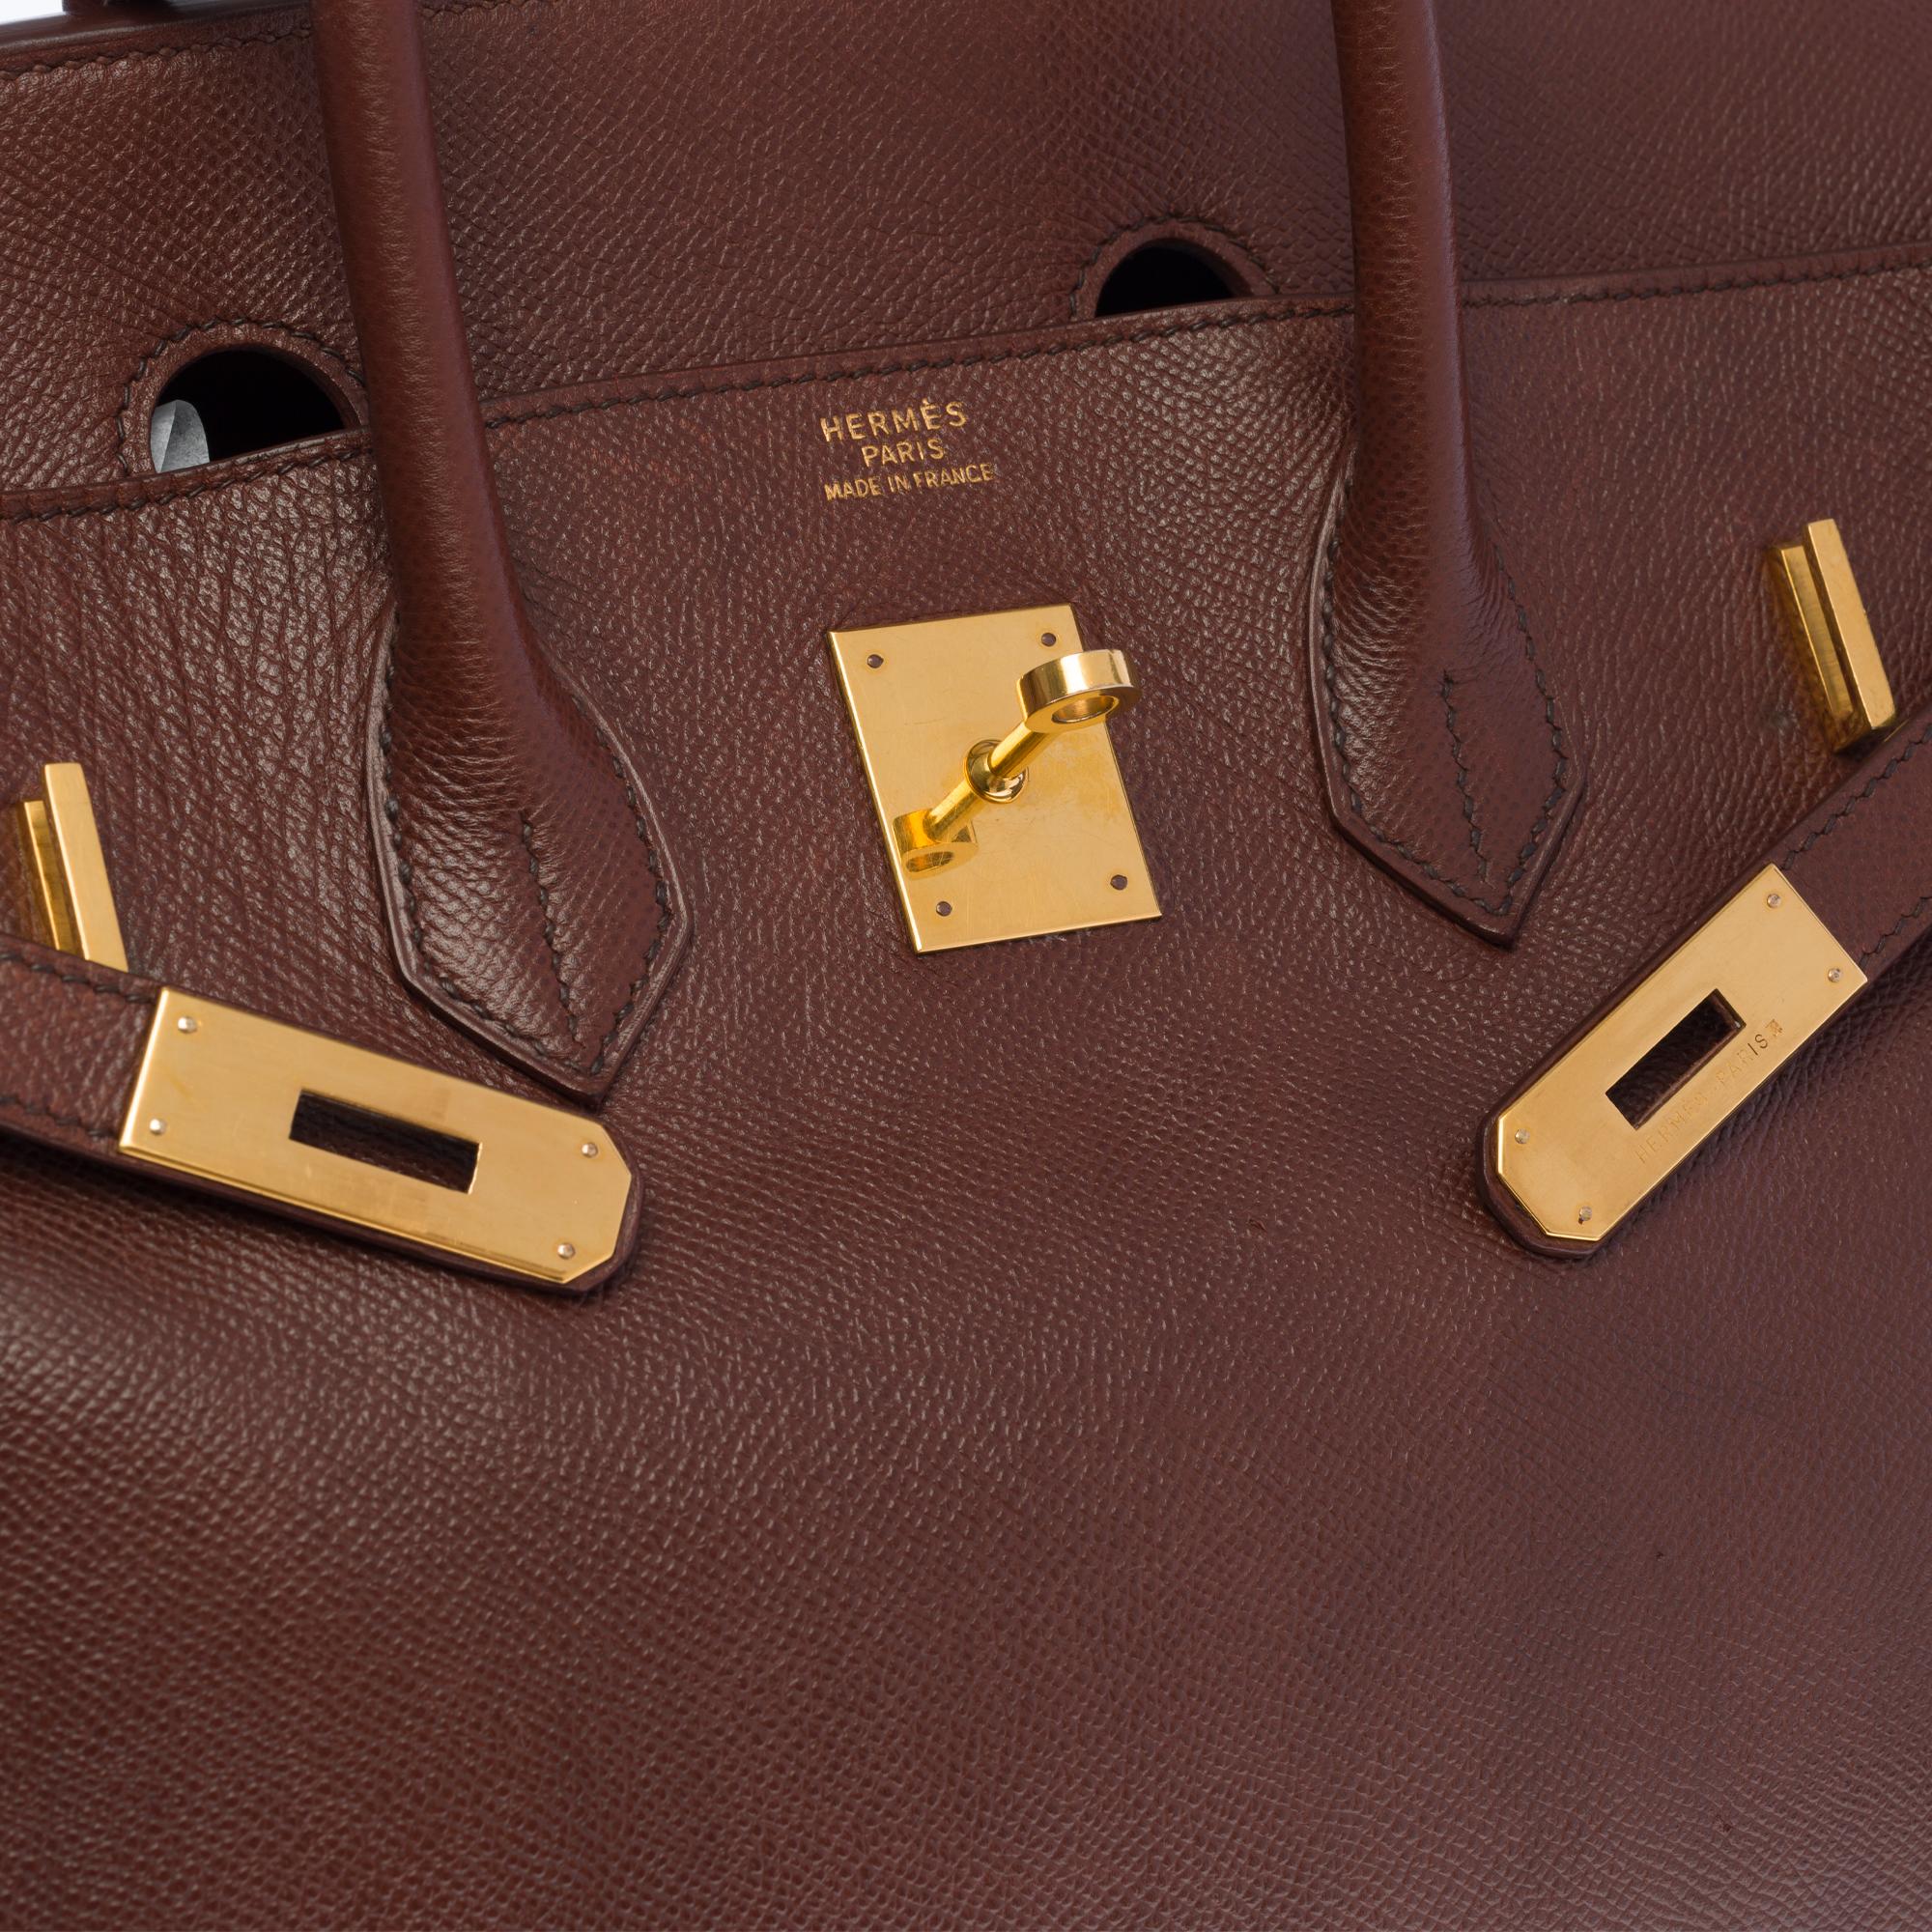 Brown Hermès Birkin 35 handbag in brown Courchevel leather with gold hardware !